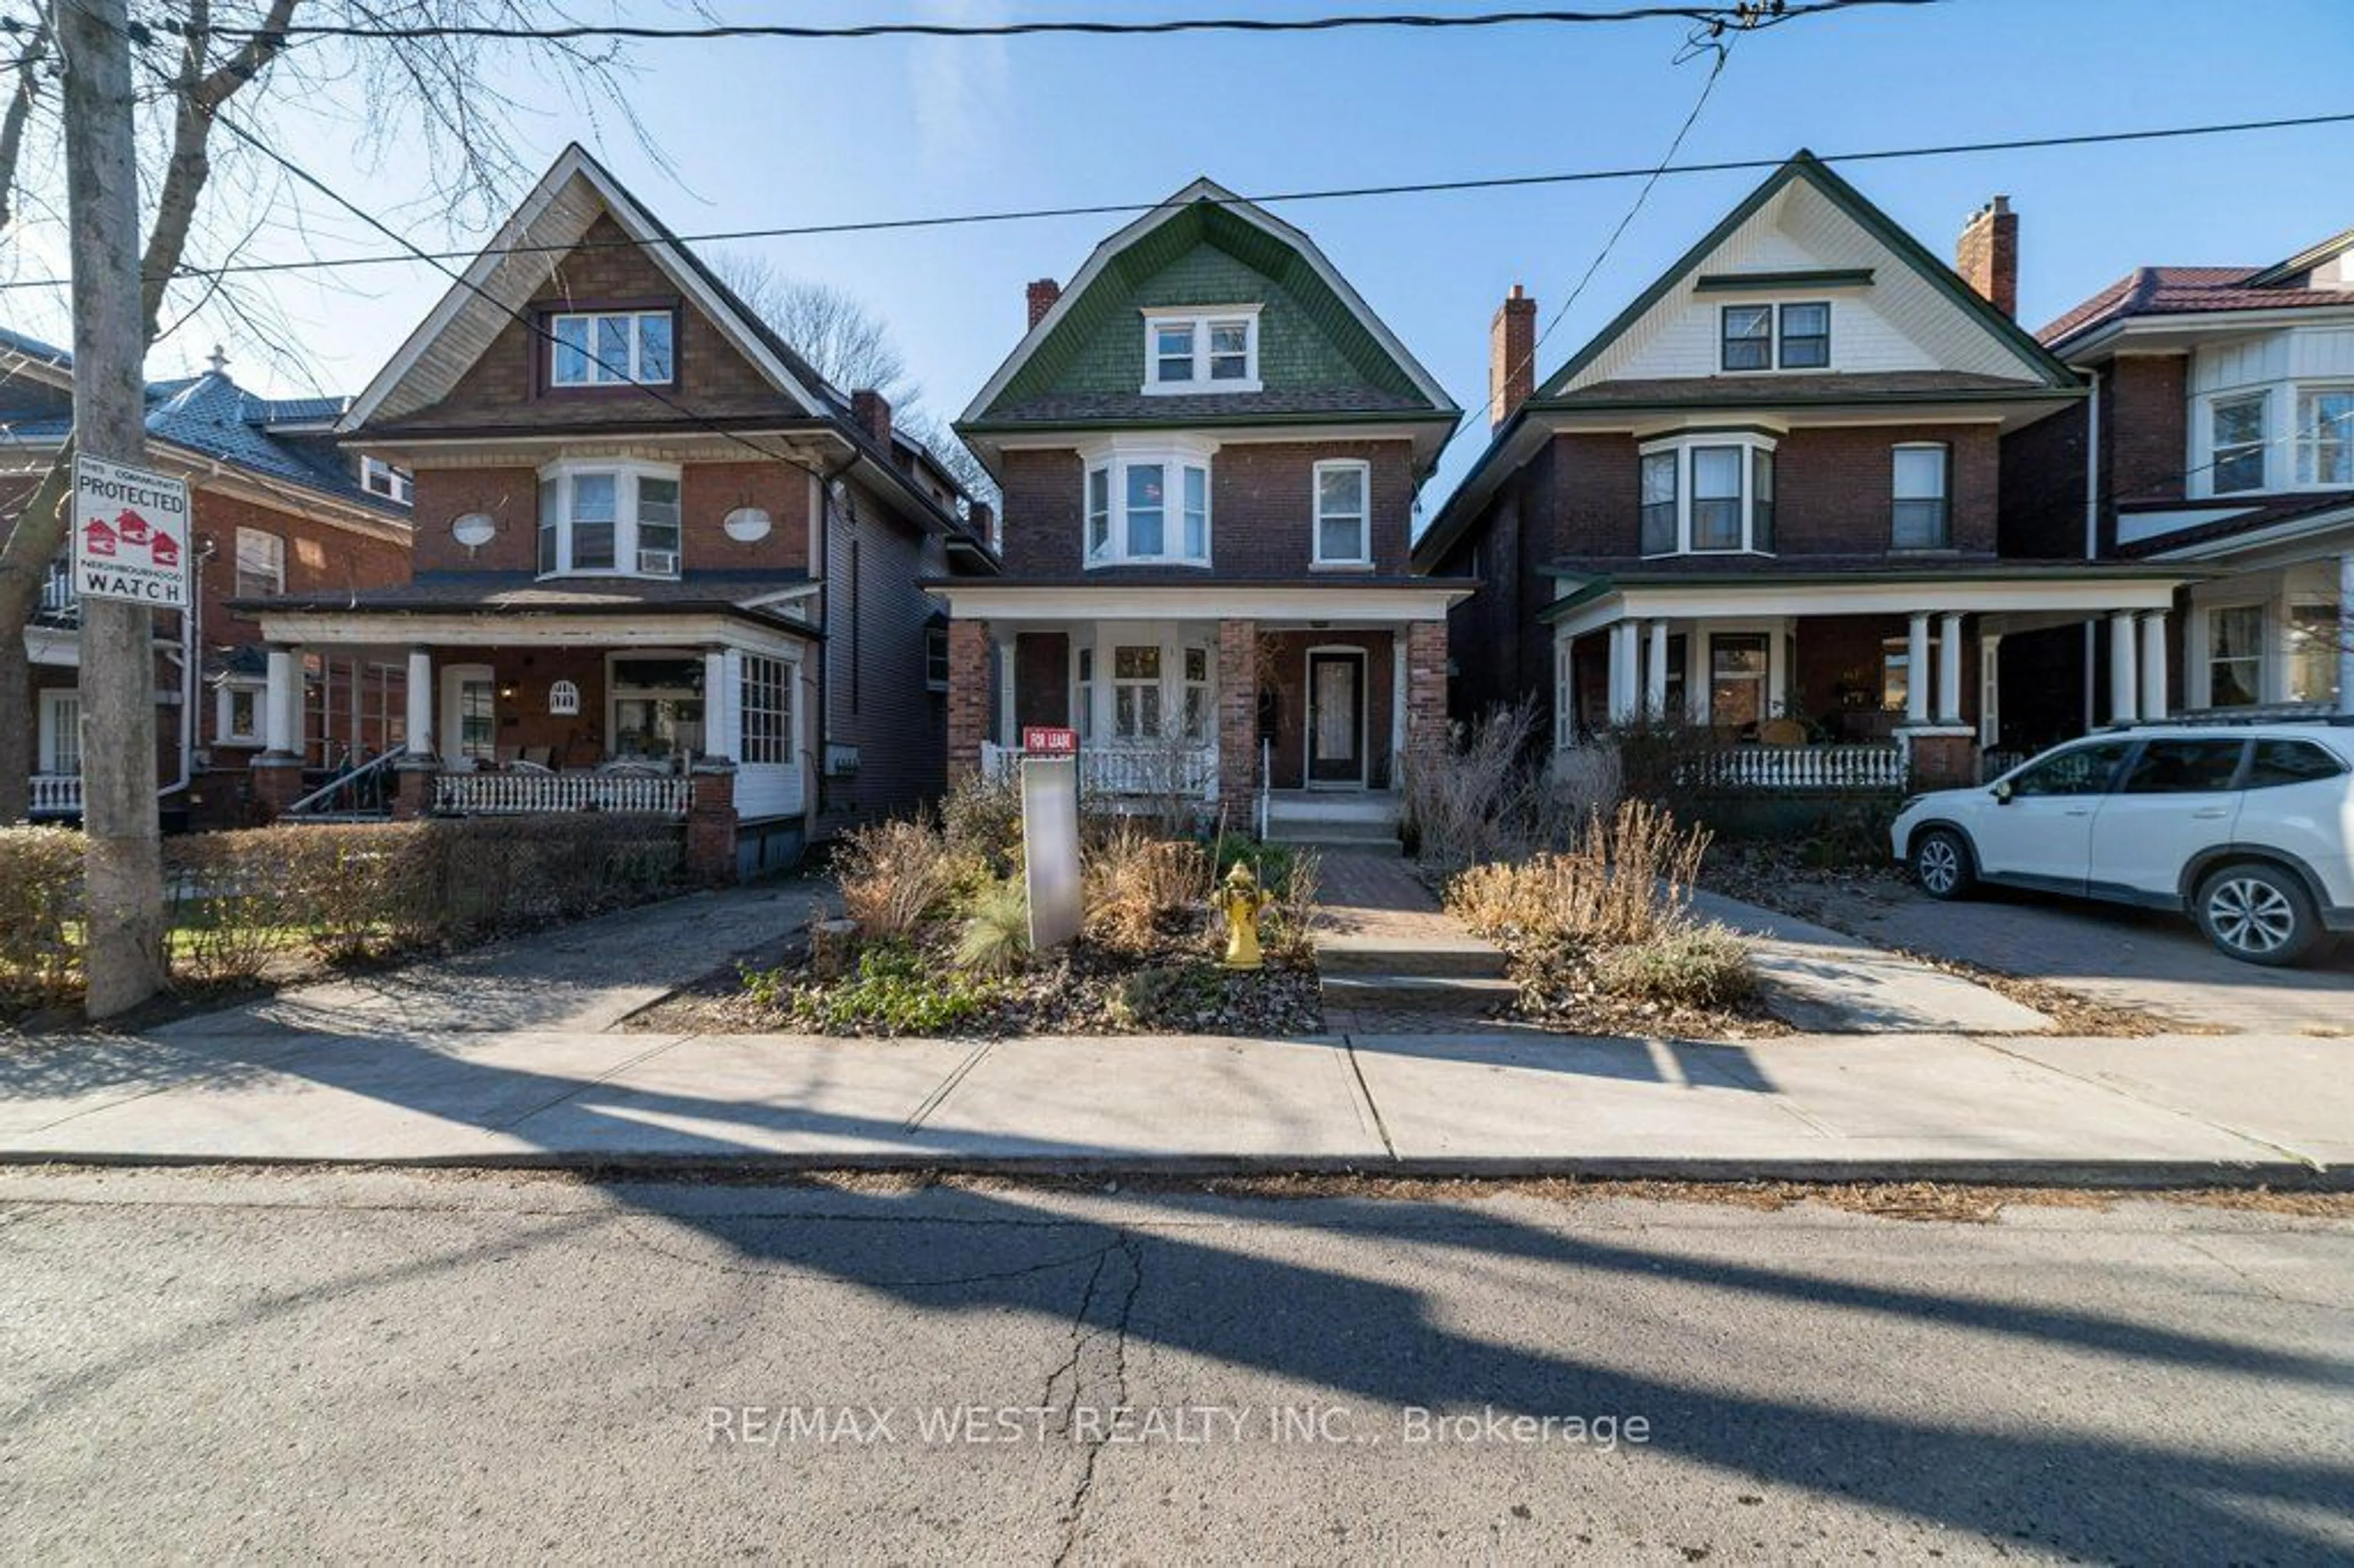 Frontside or backside of a home for 145 Springhurst Ave, Toronto Ontario M6K 1B9